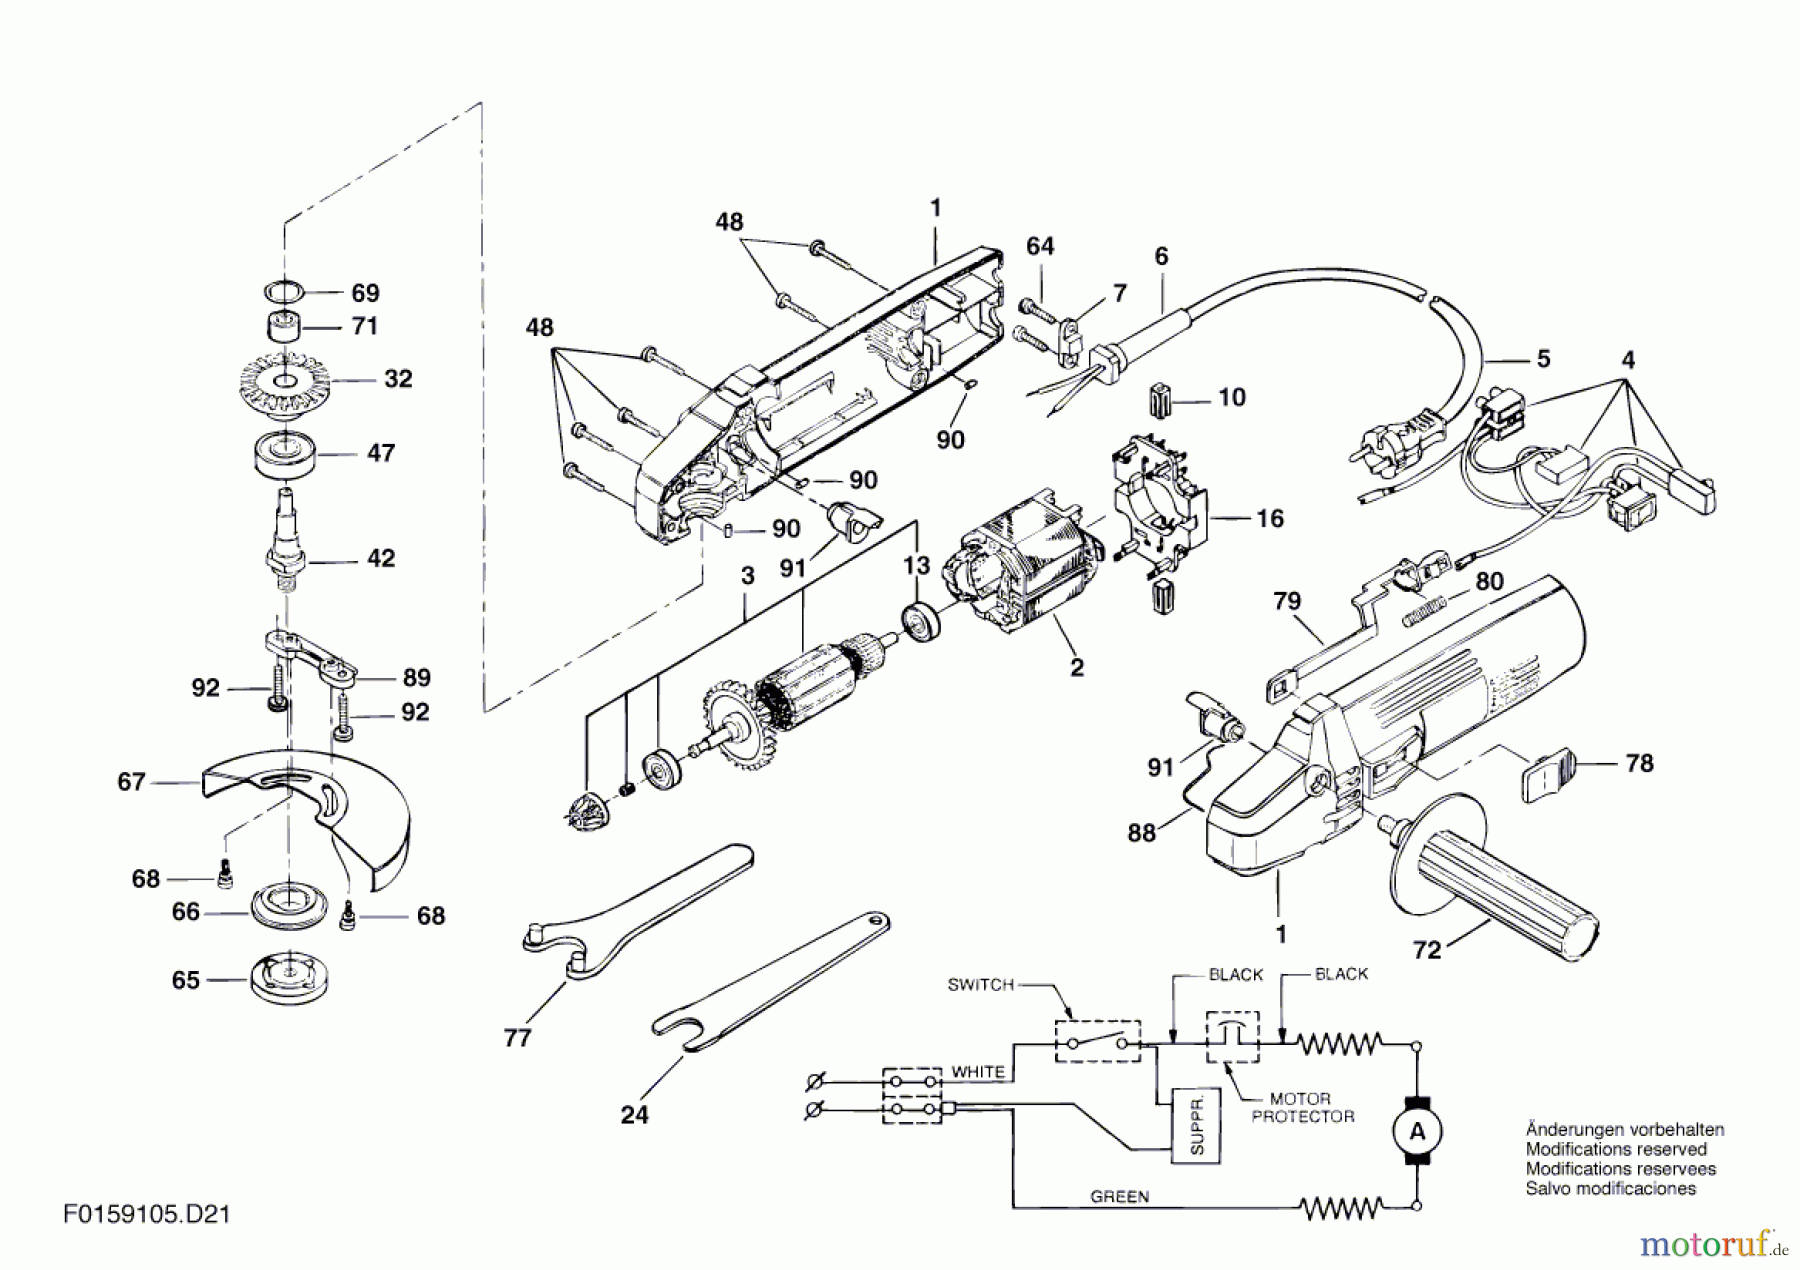  Bosch Werkzeug Winkelschleifer 9105 H2 Seite 1